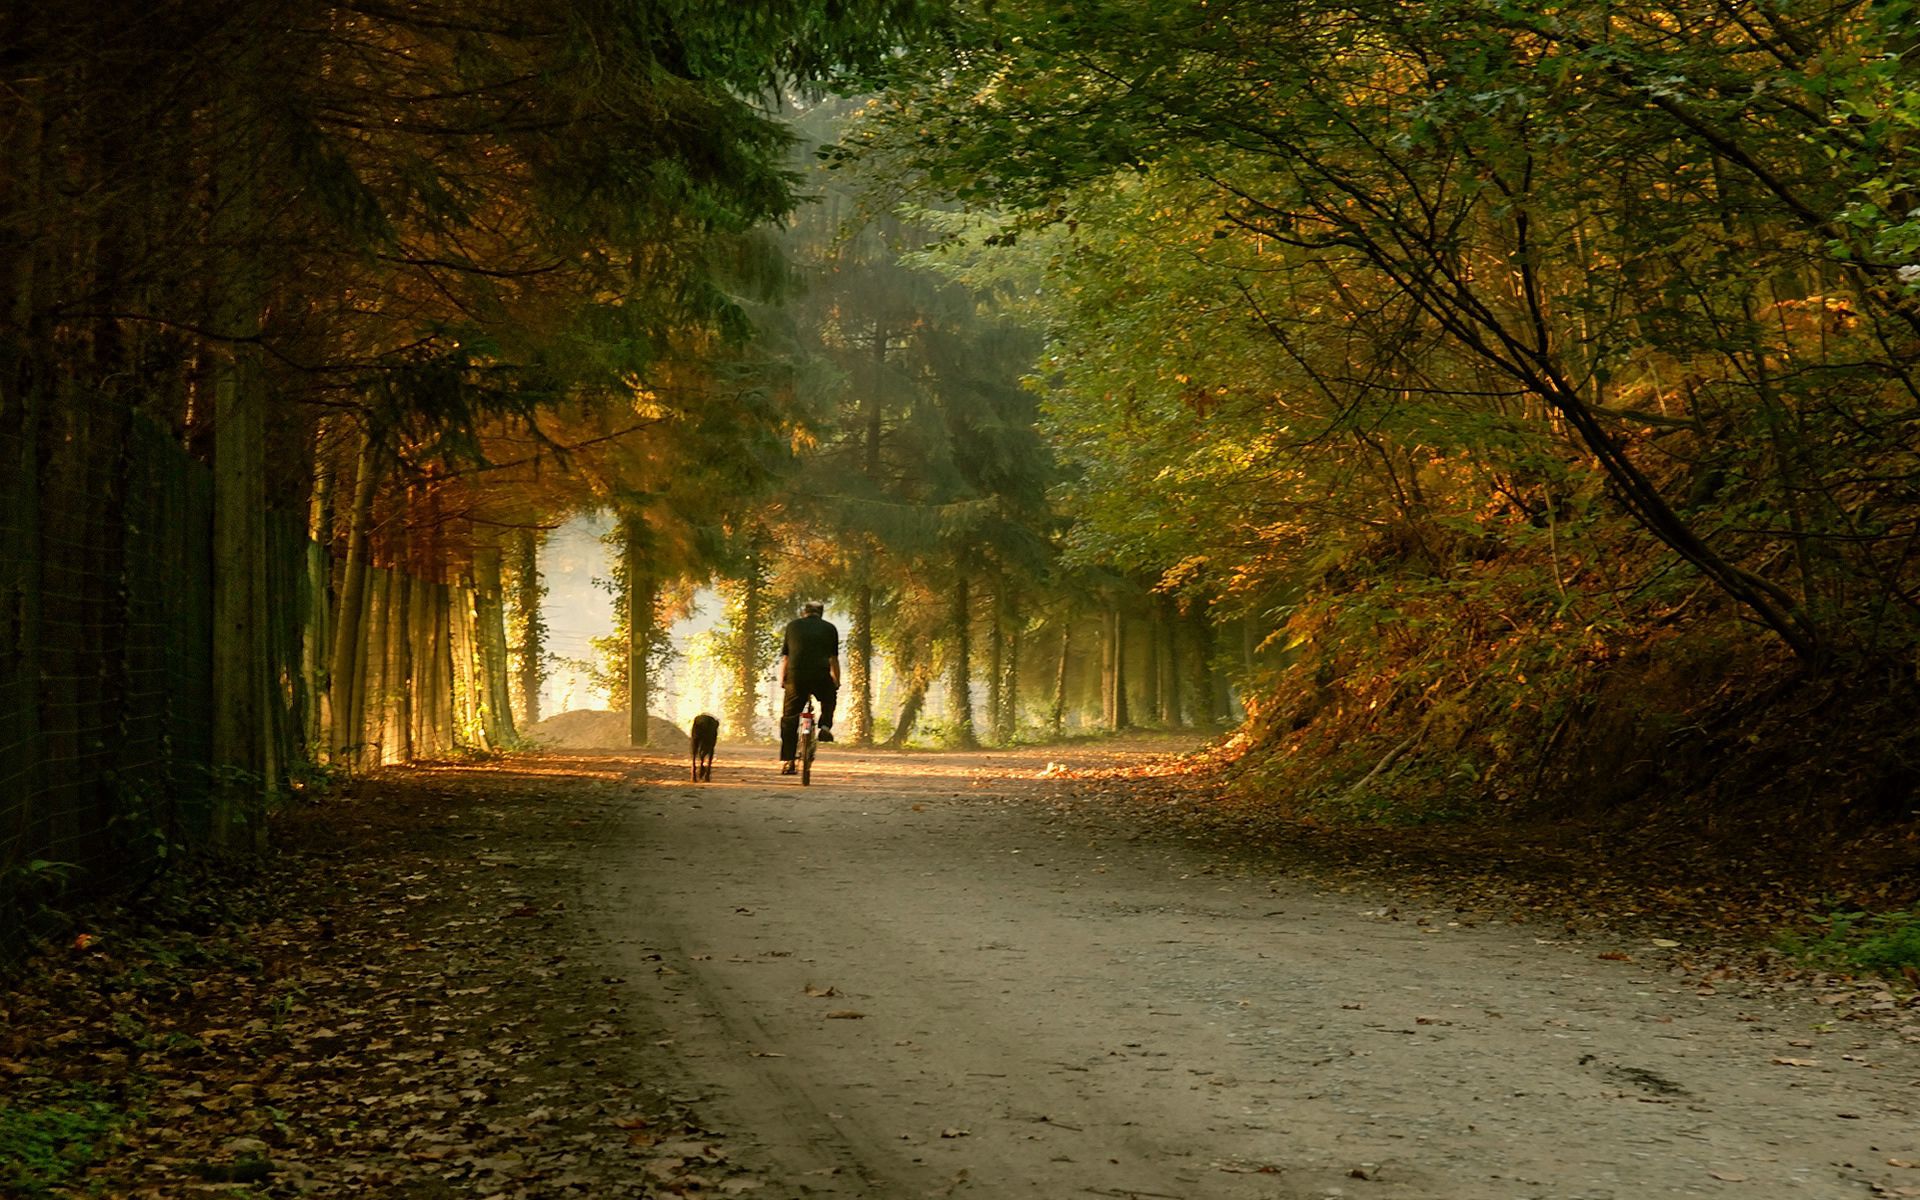 trees, autumn, miscellanea, miscellaneous, park, bicycle, ride